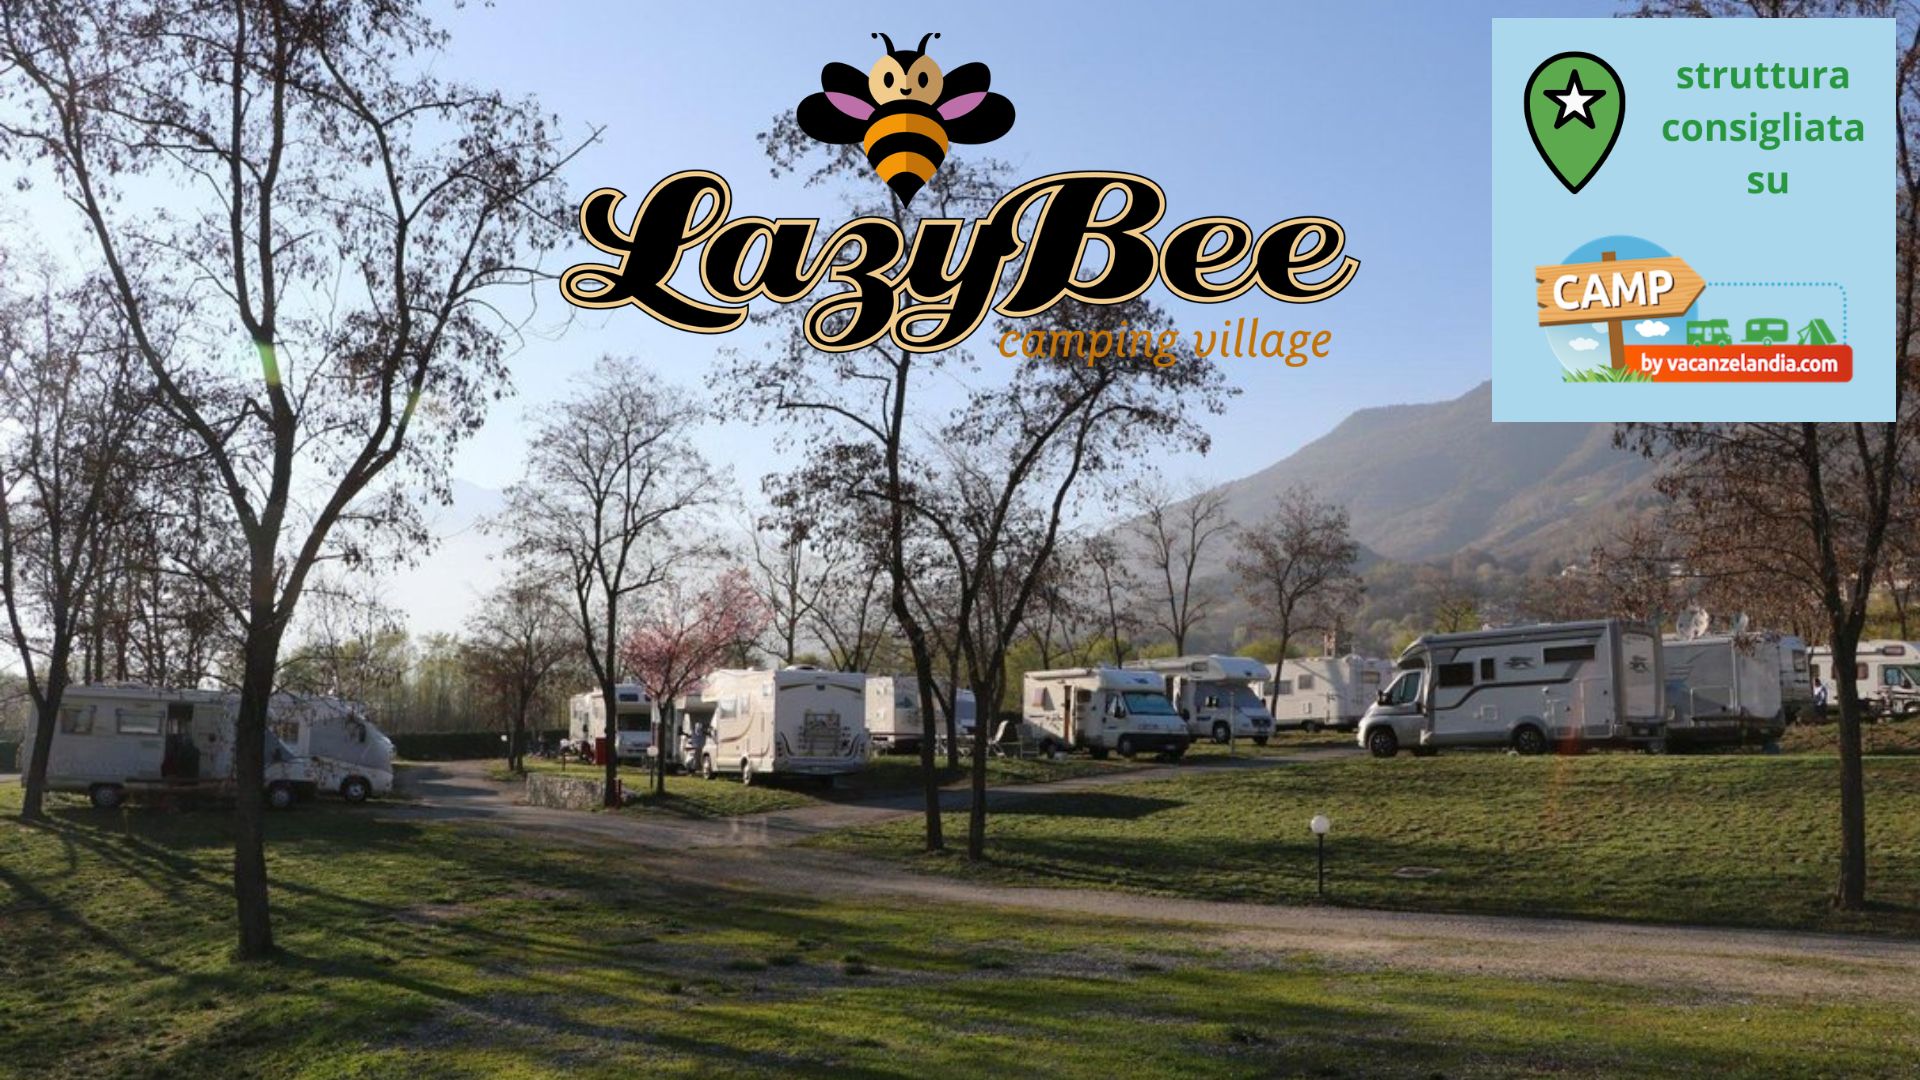 Camping Lazy Bee struttura consigliata